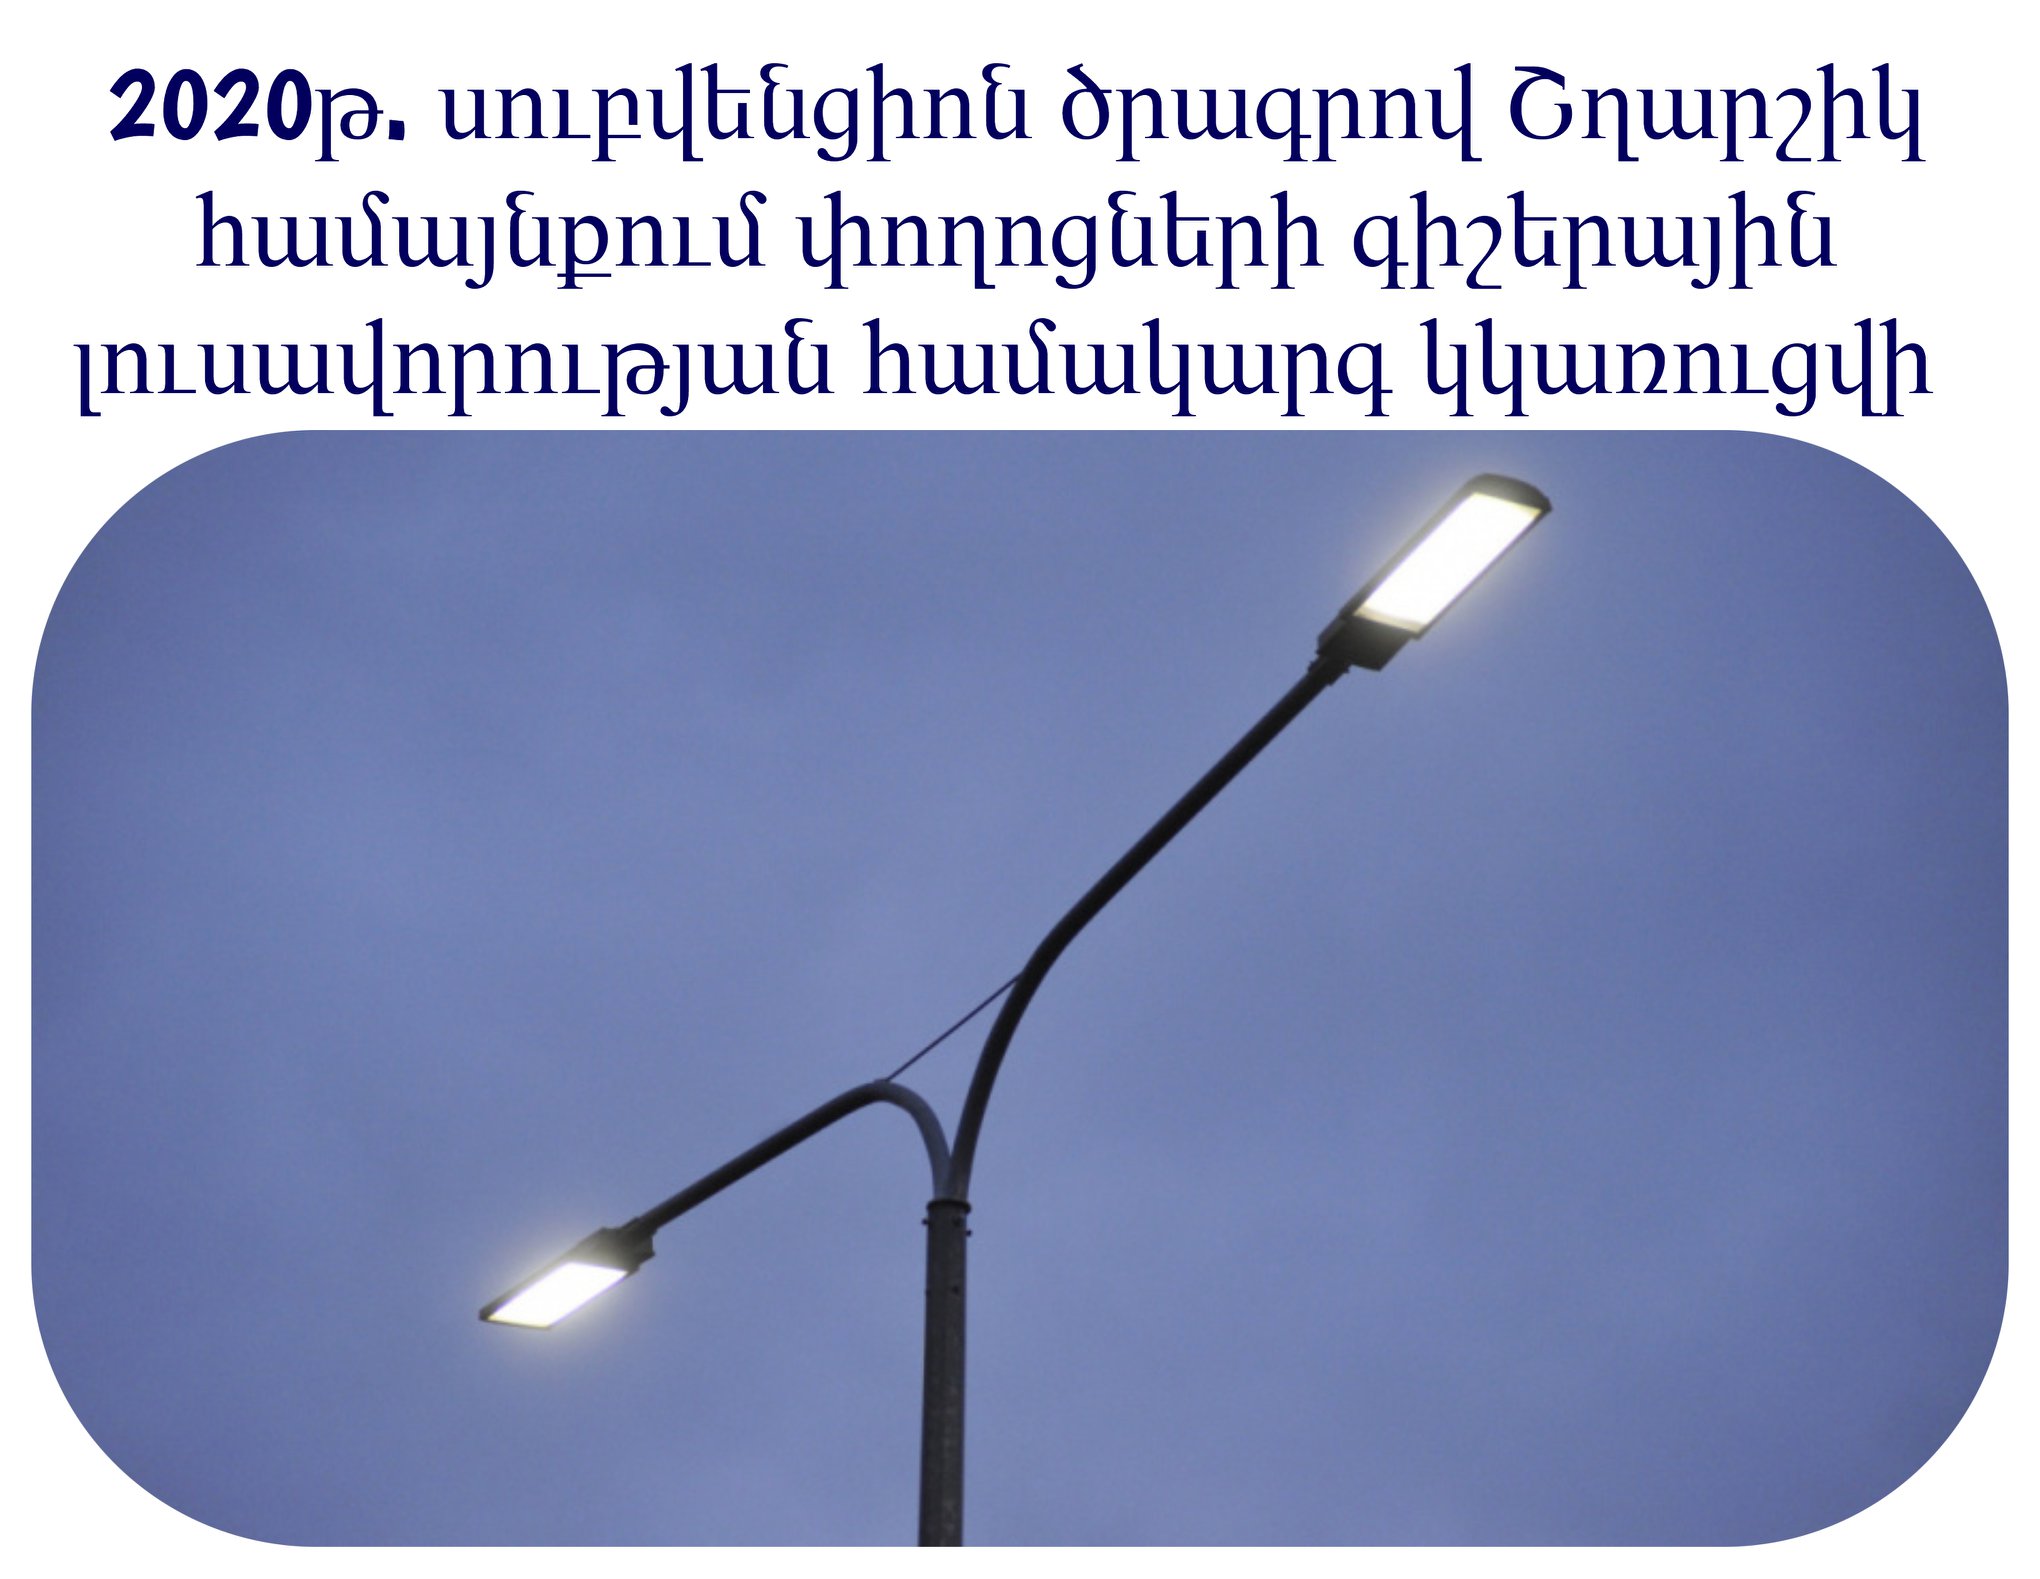 Արագածոտնի մարզի համայնքների տնտեսական և սոցիալական ենթակառուցվածքների զարգացմանն ուղղված 2020 թվականի սուբվենցիոն ծրագրի շրջանակում Շղարշիկ համայնքում կկառուցվի փողոցների գիշերային լուսավորության համակարգ